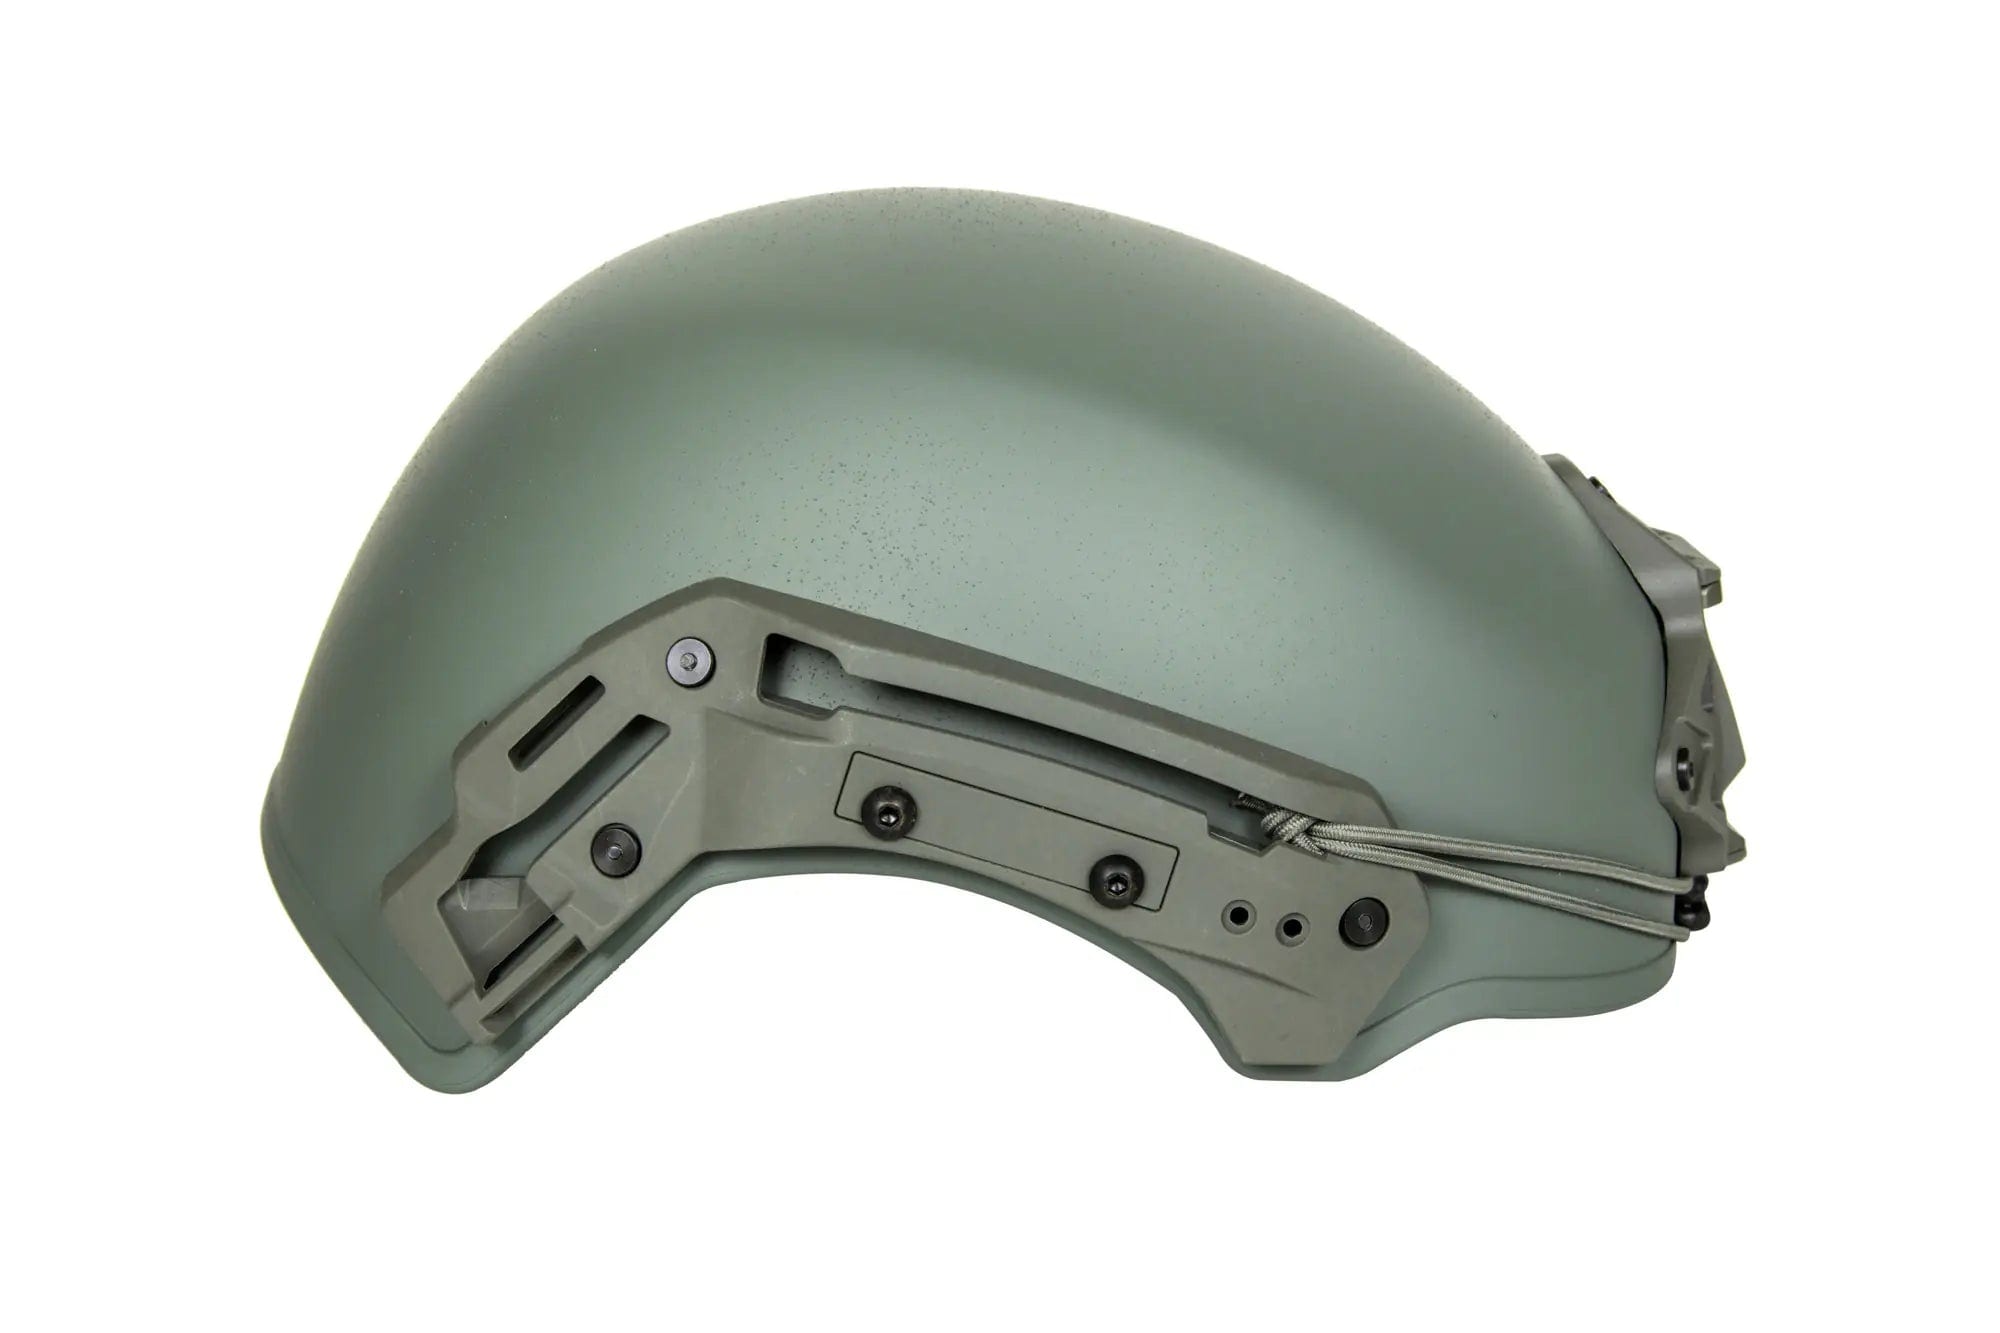 EXFIL helmet (L/XL) - Foliage Green